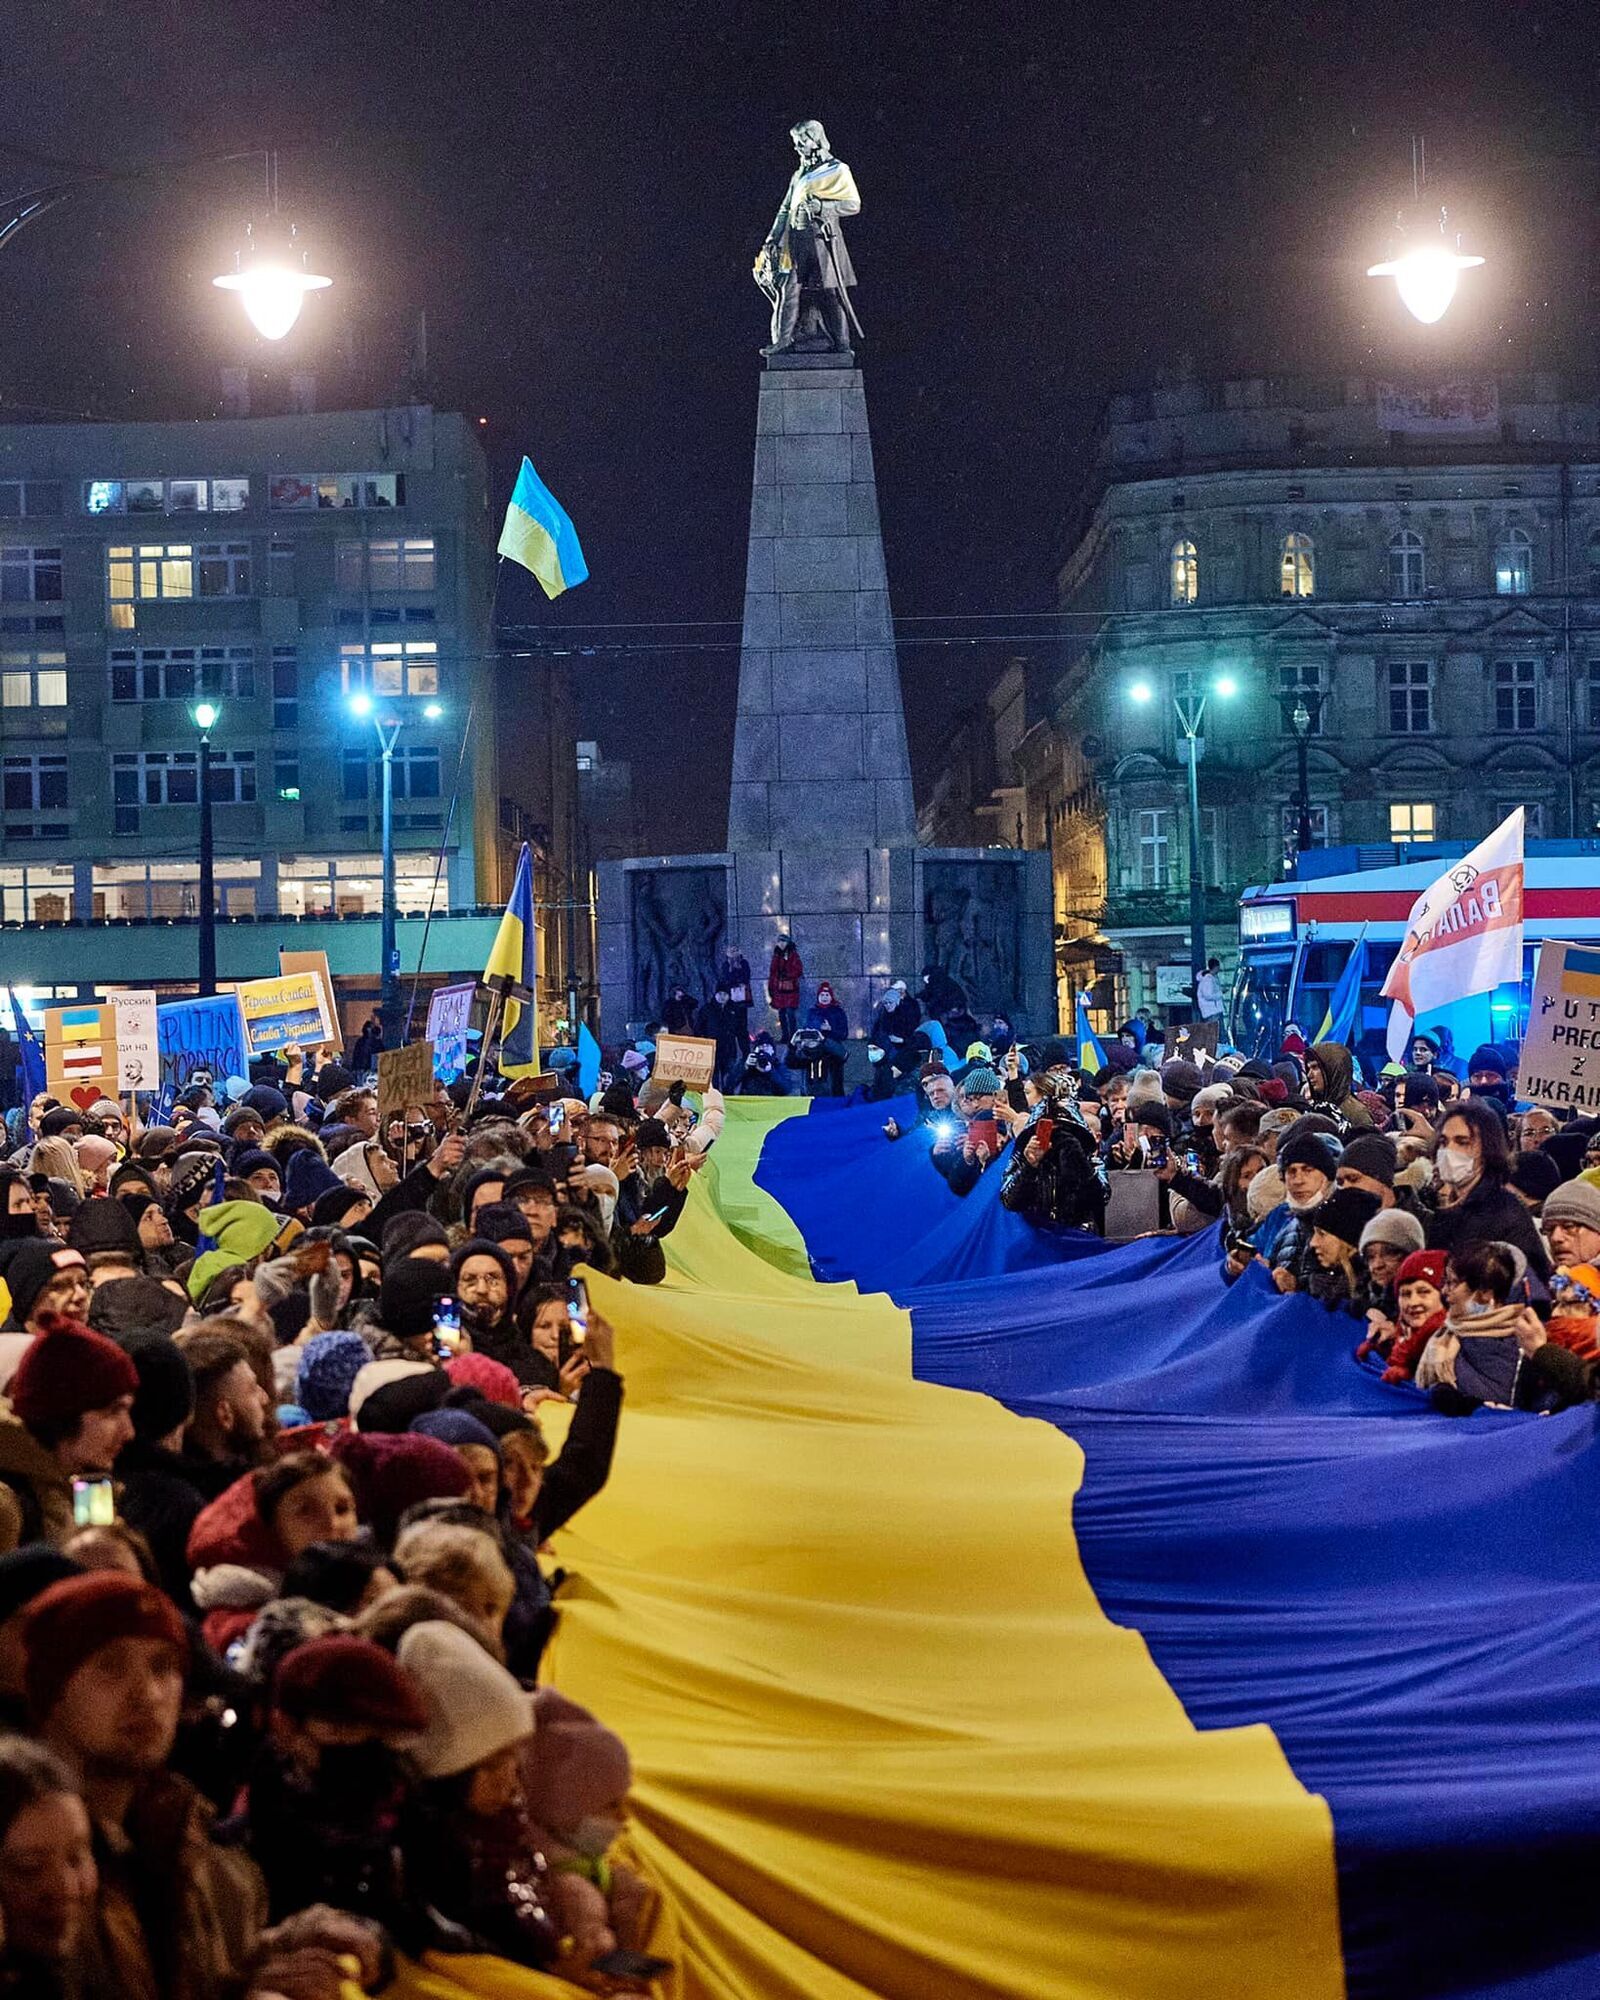 "Специально для российских спутников": в Польше развернули 300-метровый флаг Украины. Фото